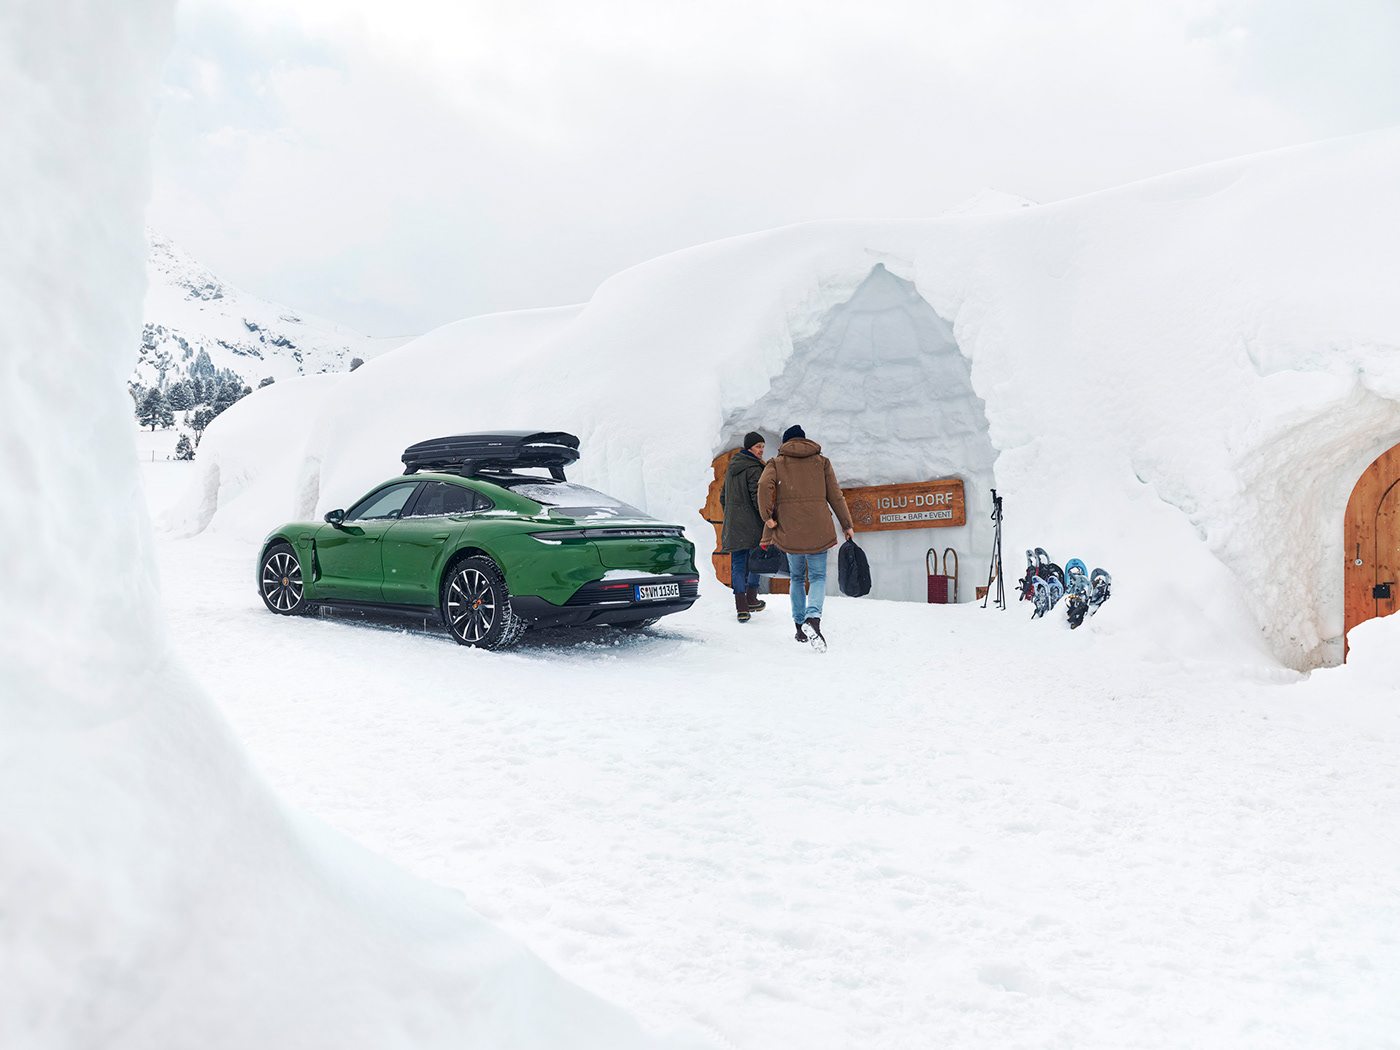 accessoires alps campaign commission equipment Landscape Porsche snow transportation video